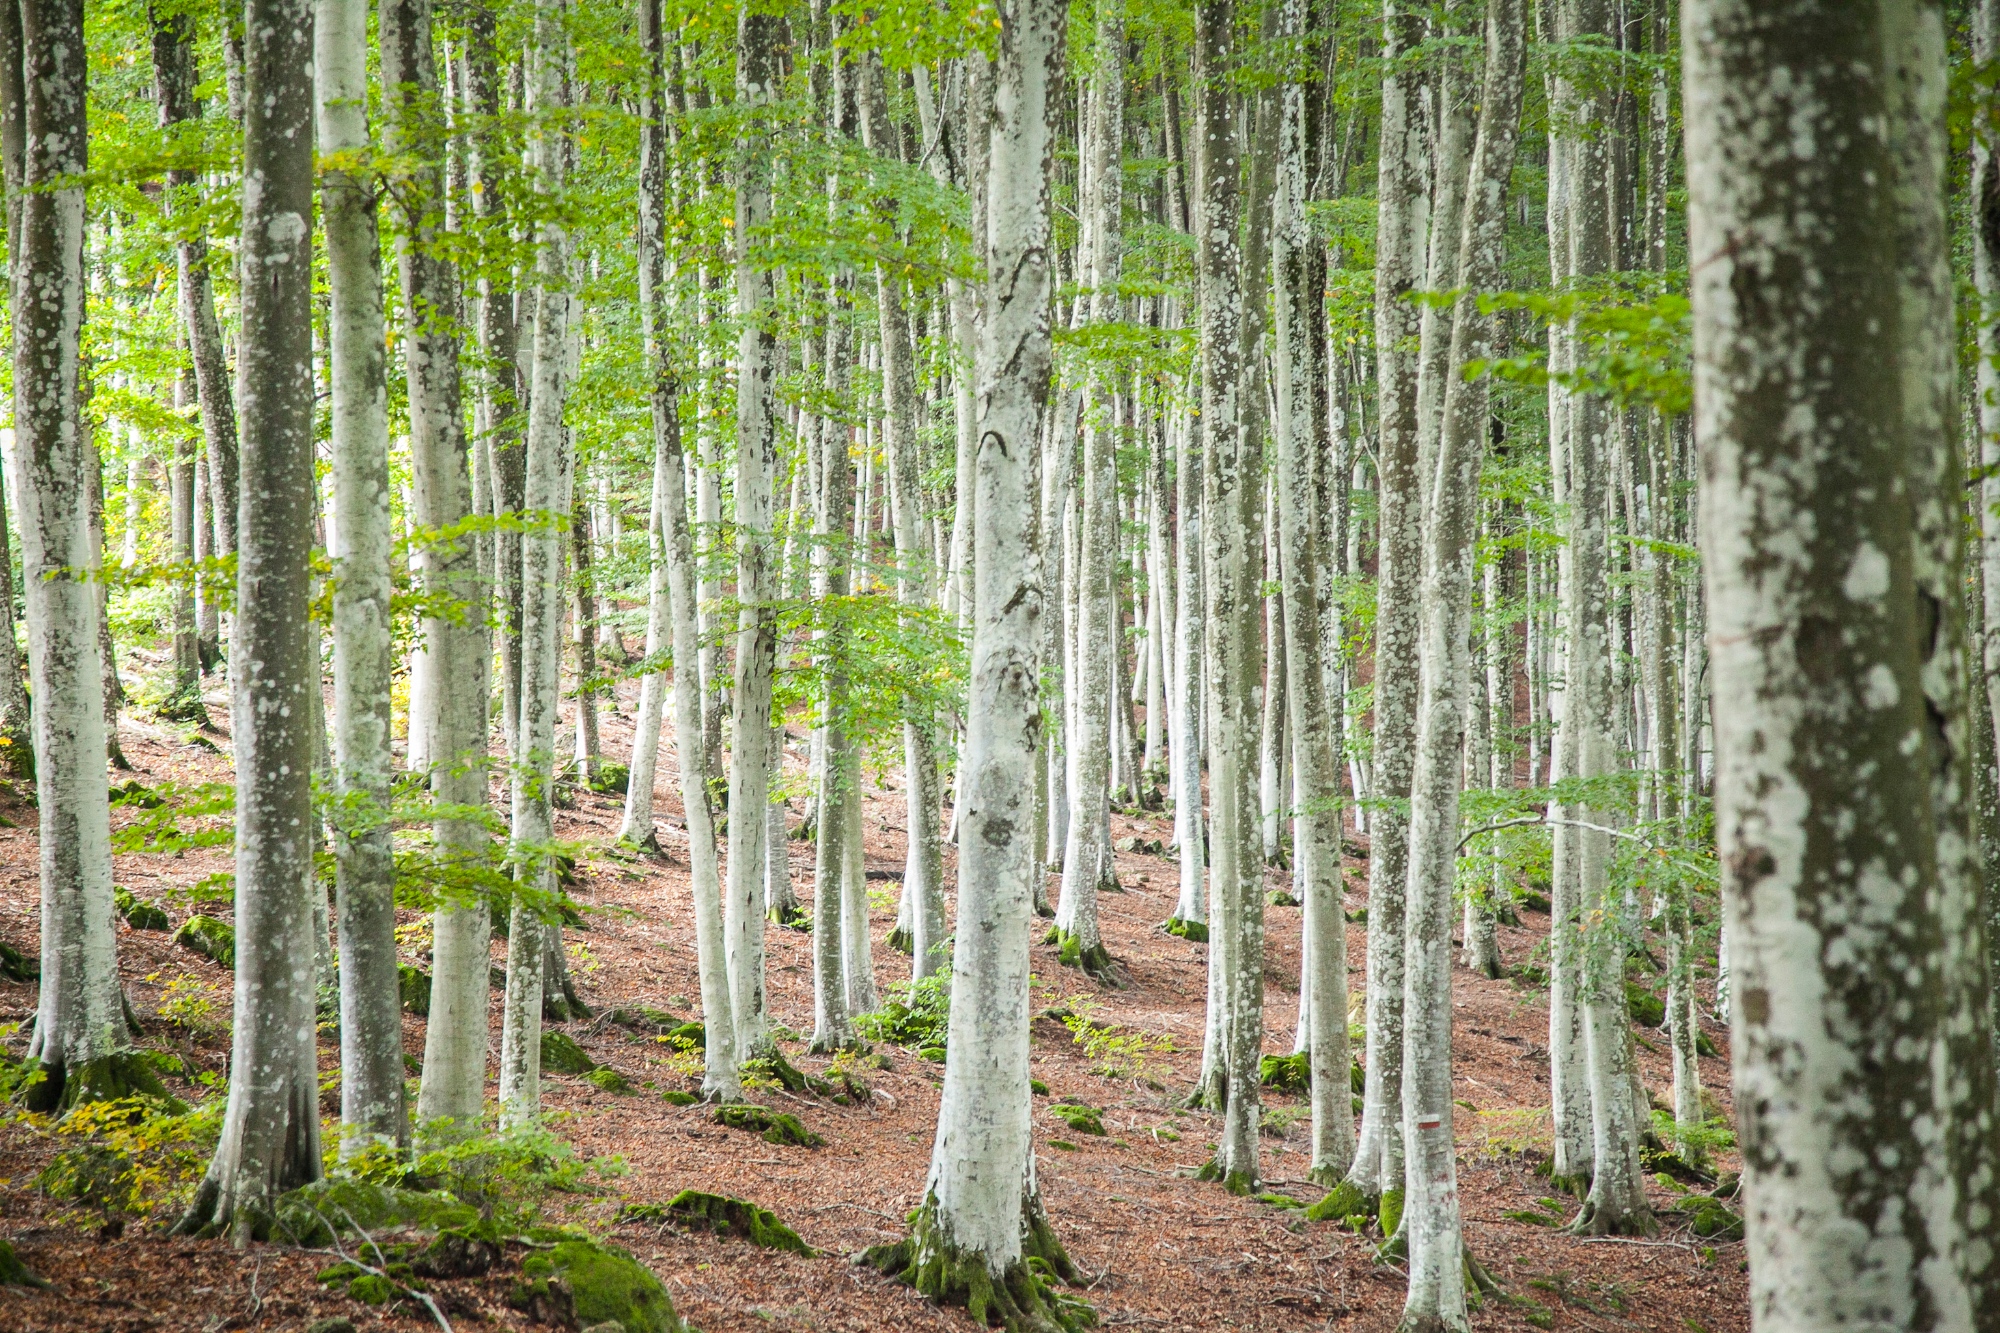 The beechwoods of Monte Amiata